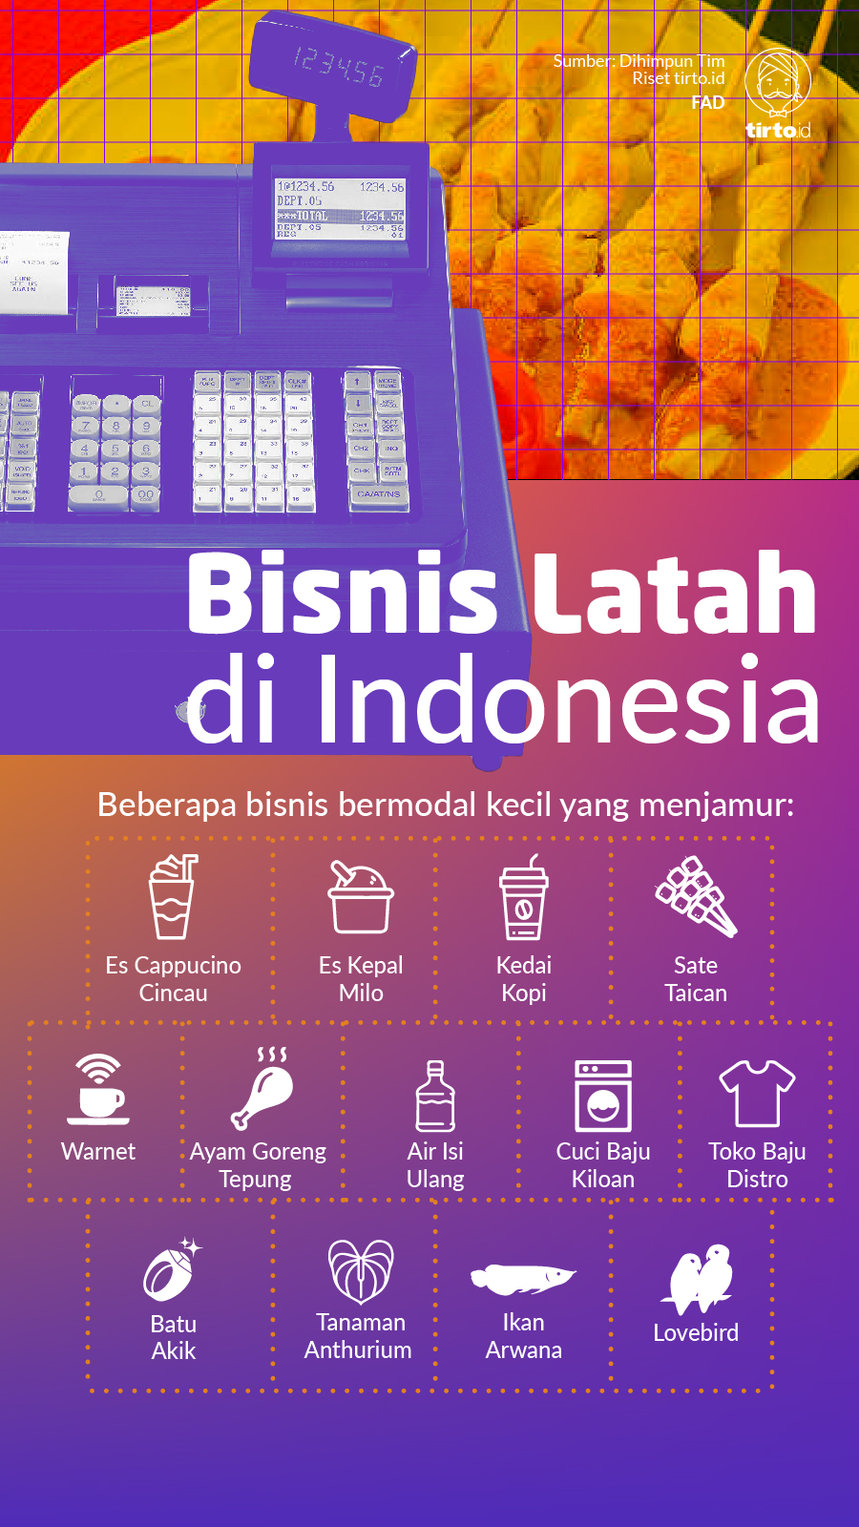 Infografik Bisnis Latah di Indonesia